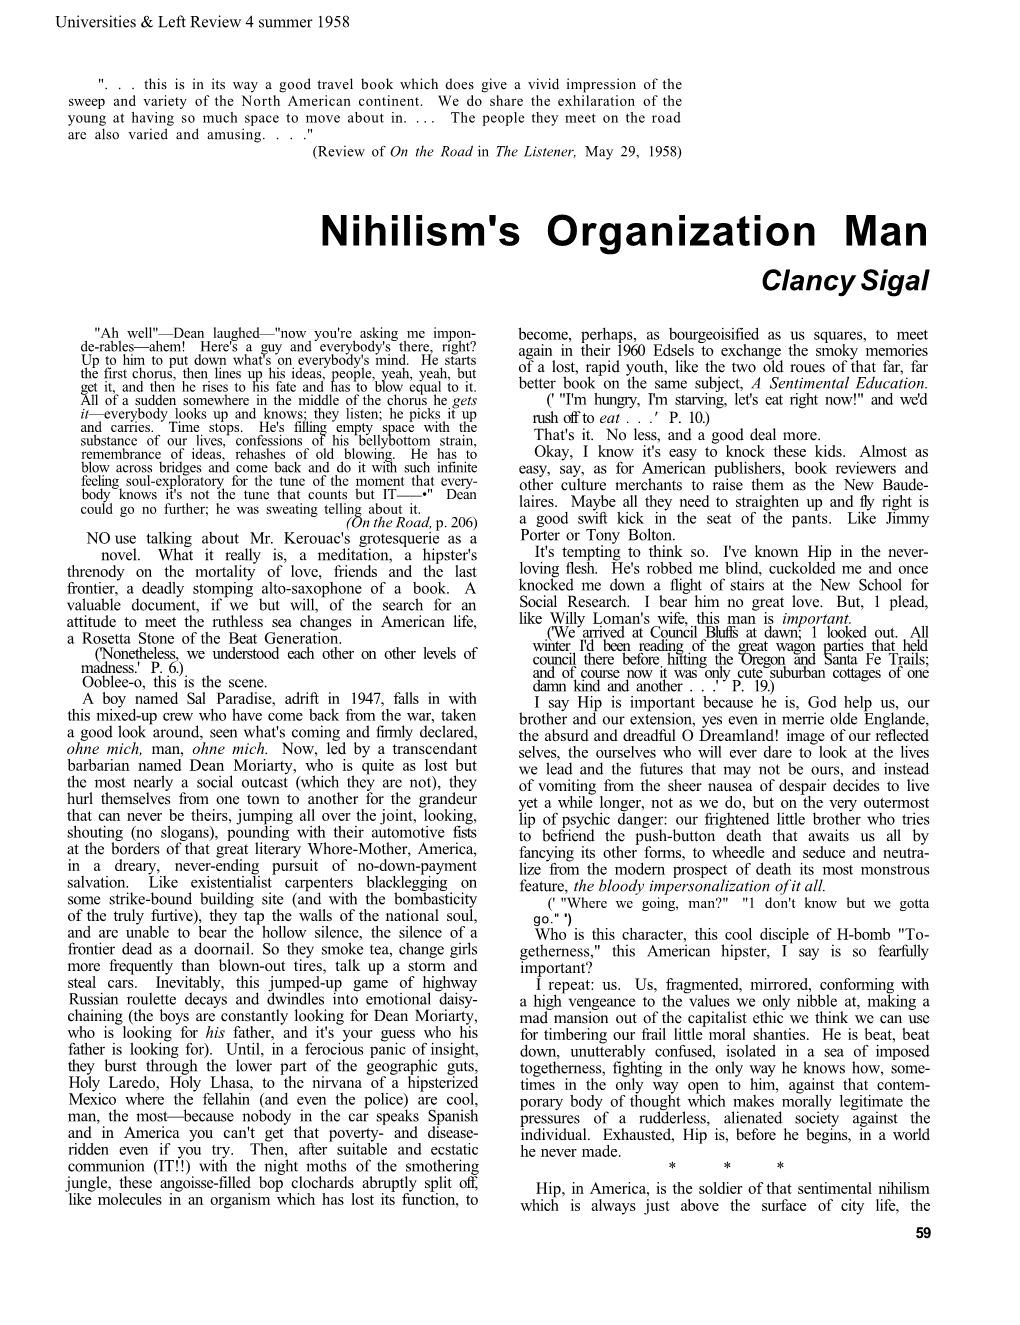 Nihilism's Organization Man Clancy Sigal